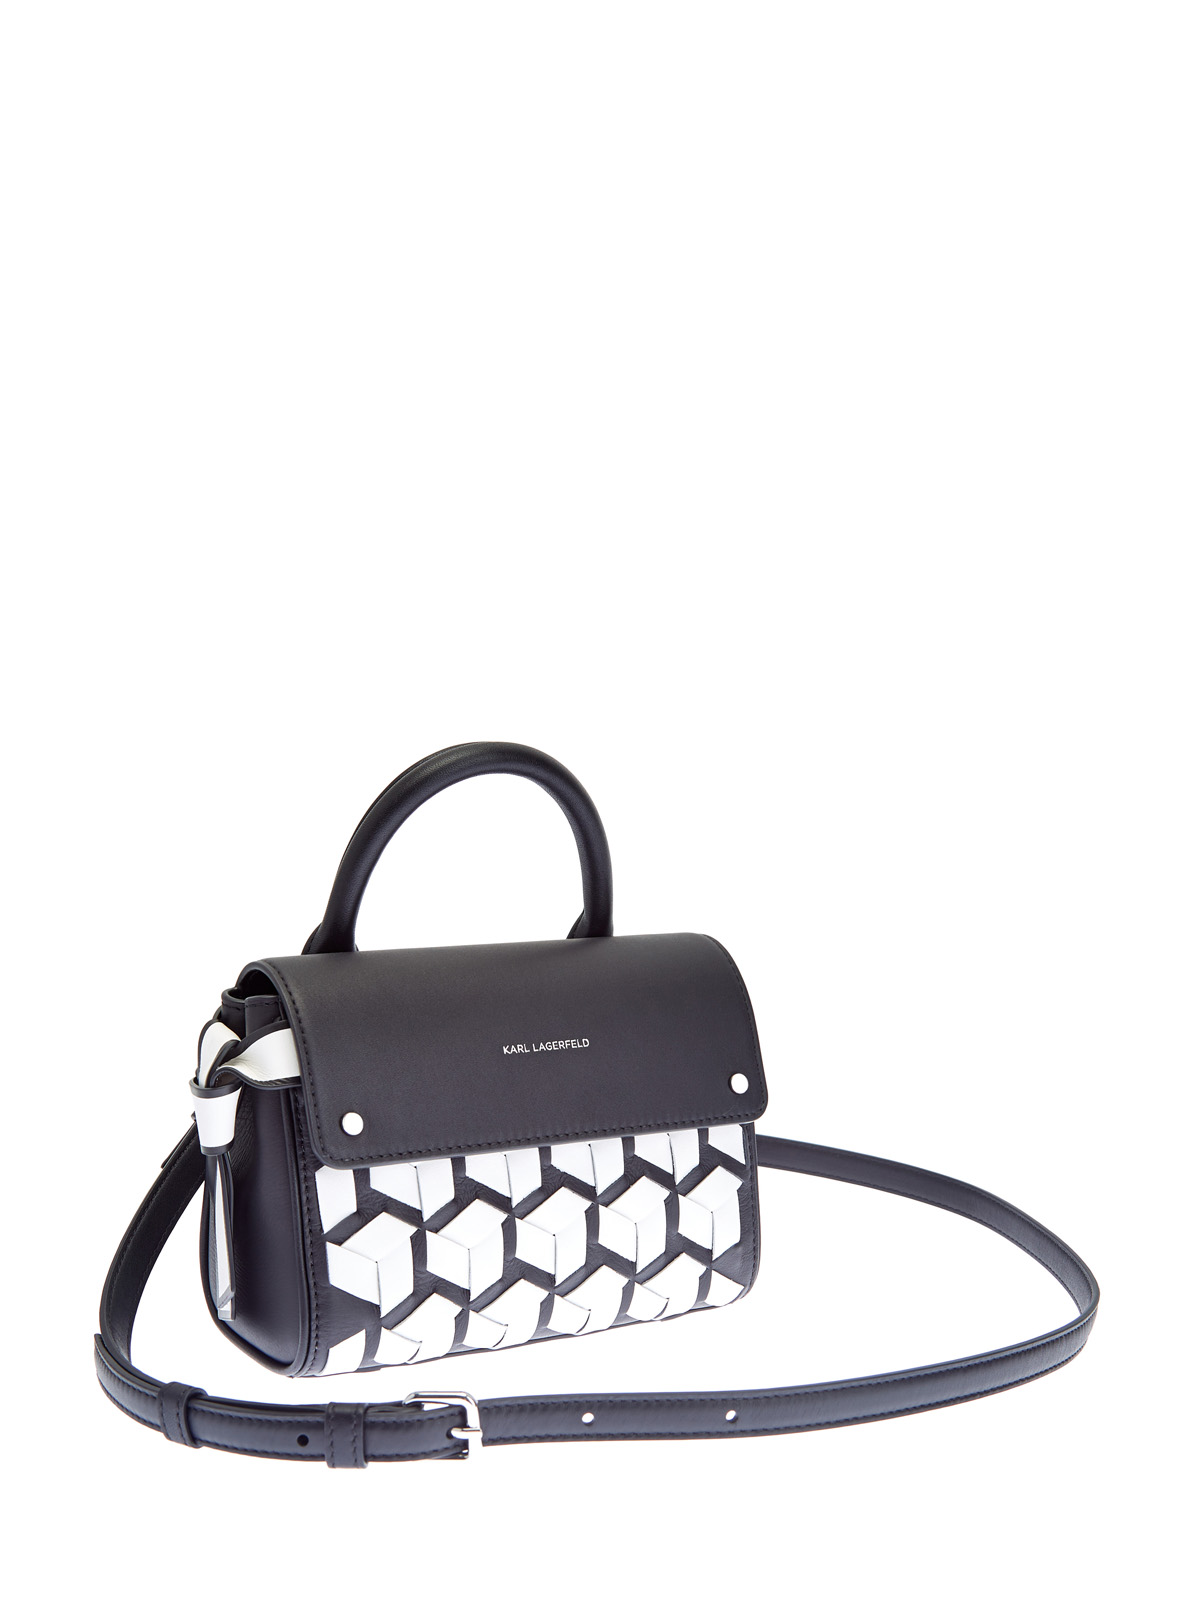 Кожаная сумка с контрастной отделкой в технике объемного плетения KARL LAGERFELD, цвет черно-белый, размер 5;6;7 - фото 3